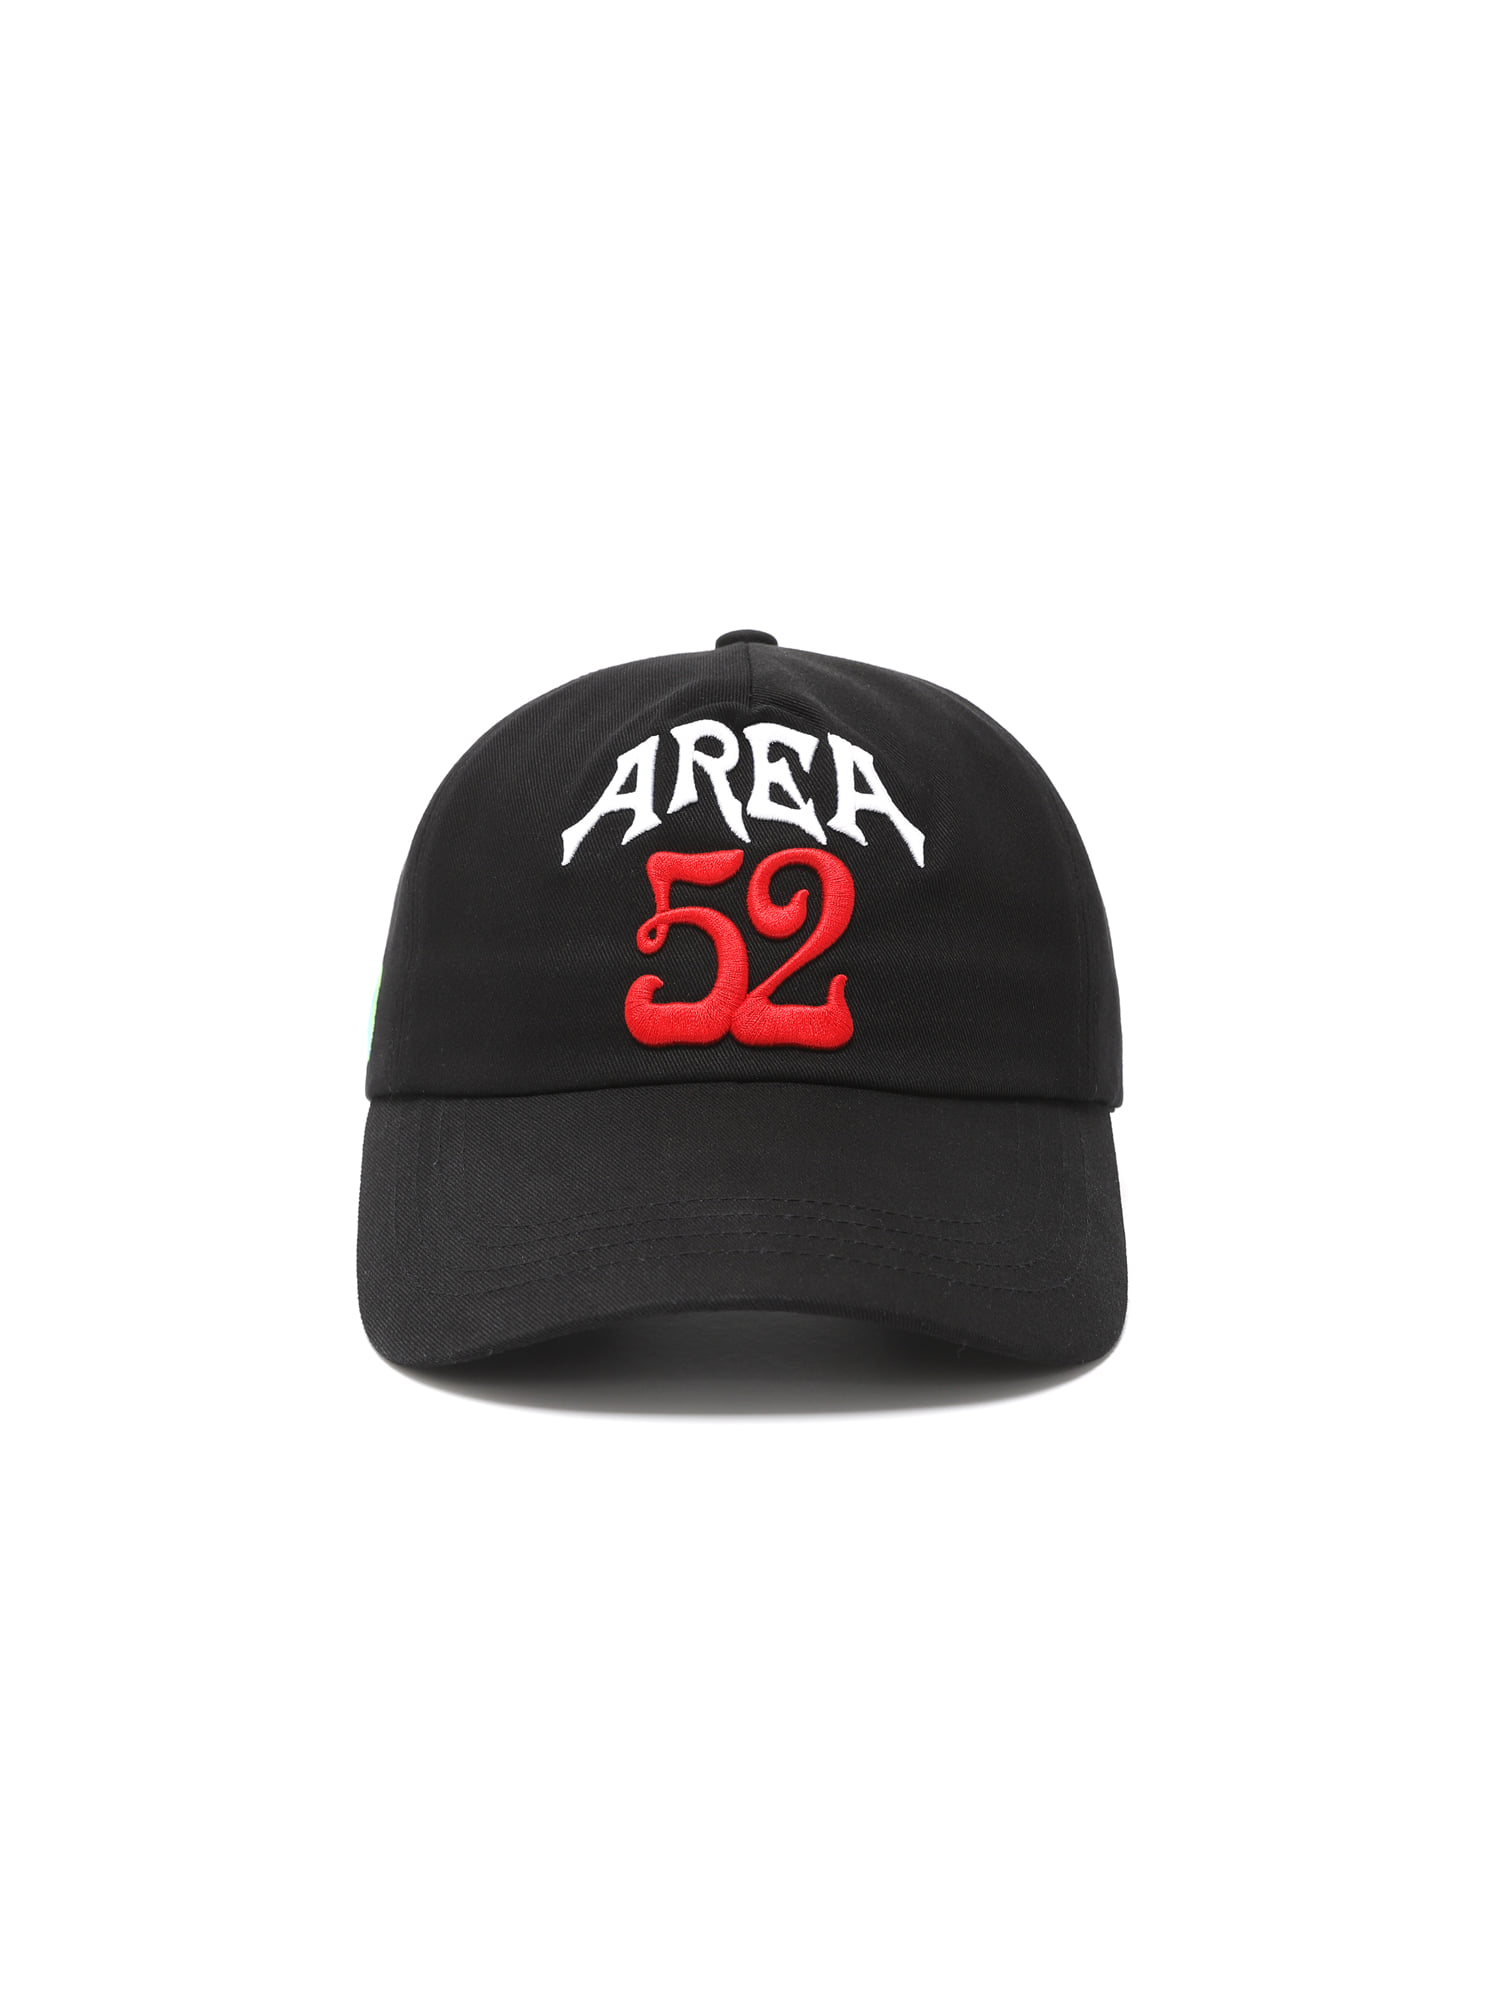 AREA 52 CAP BLACK